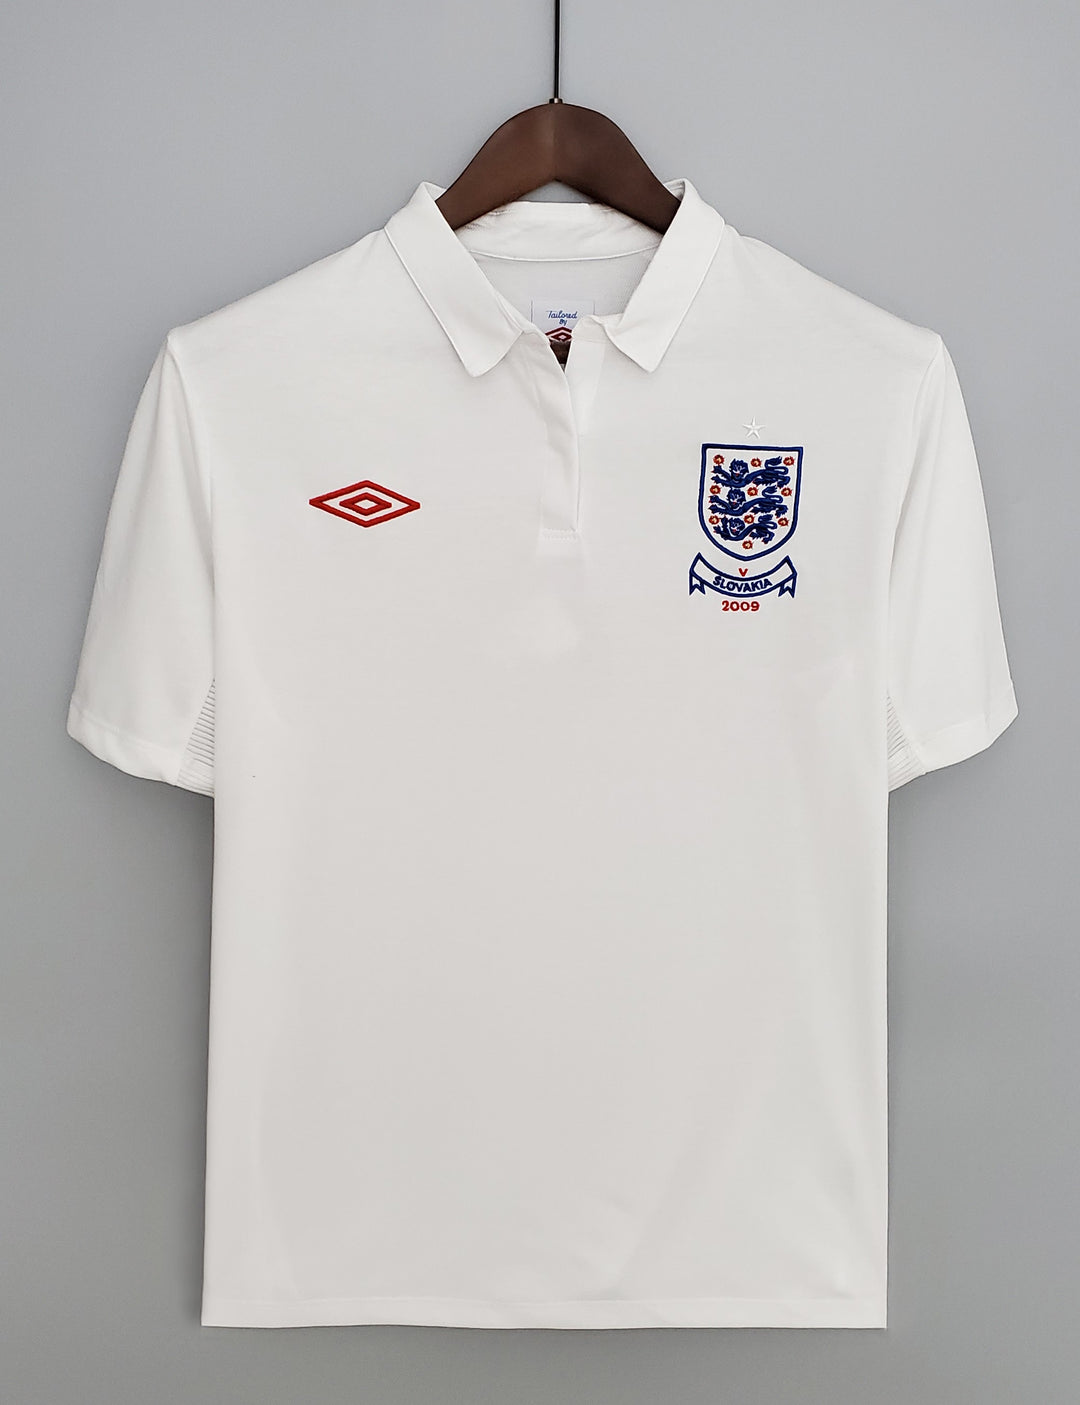 England 2009 Retro Home Shirt